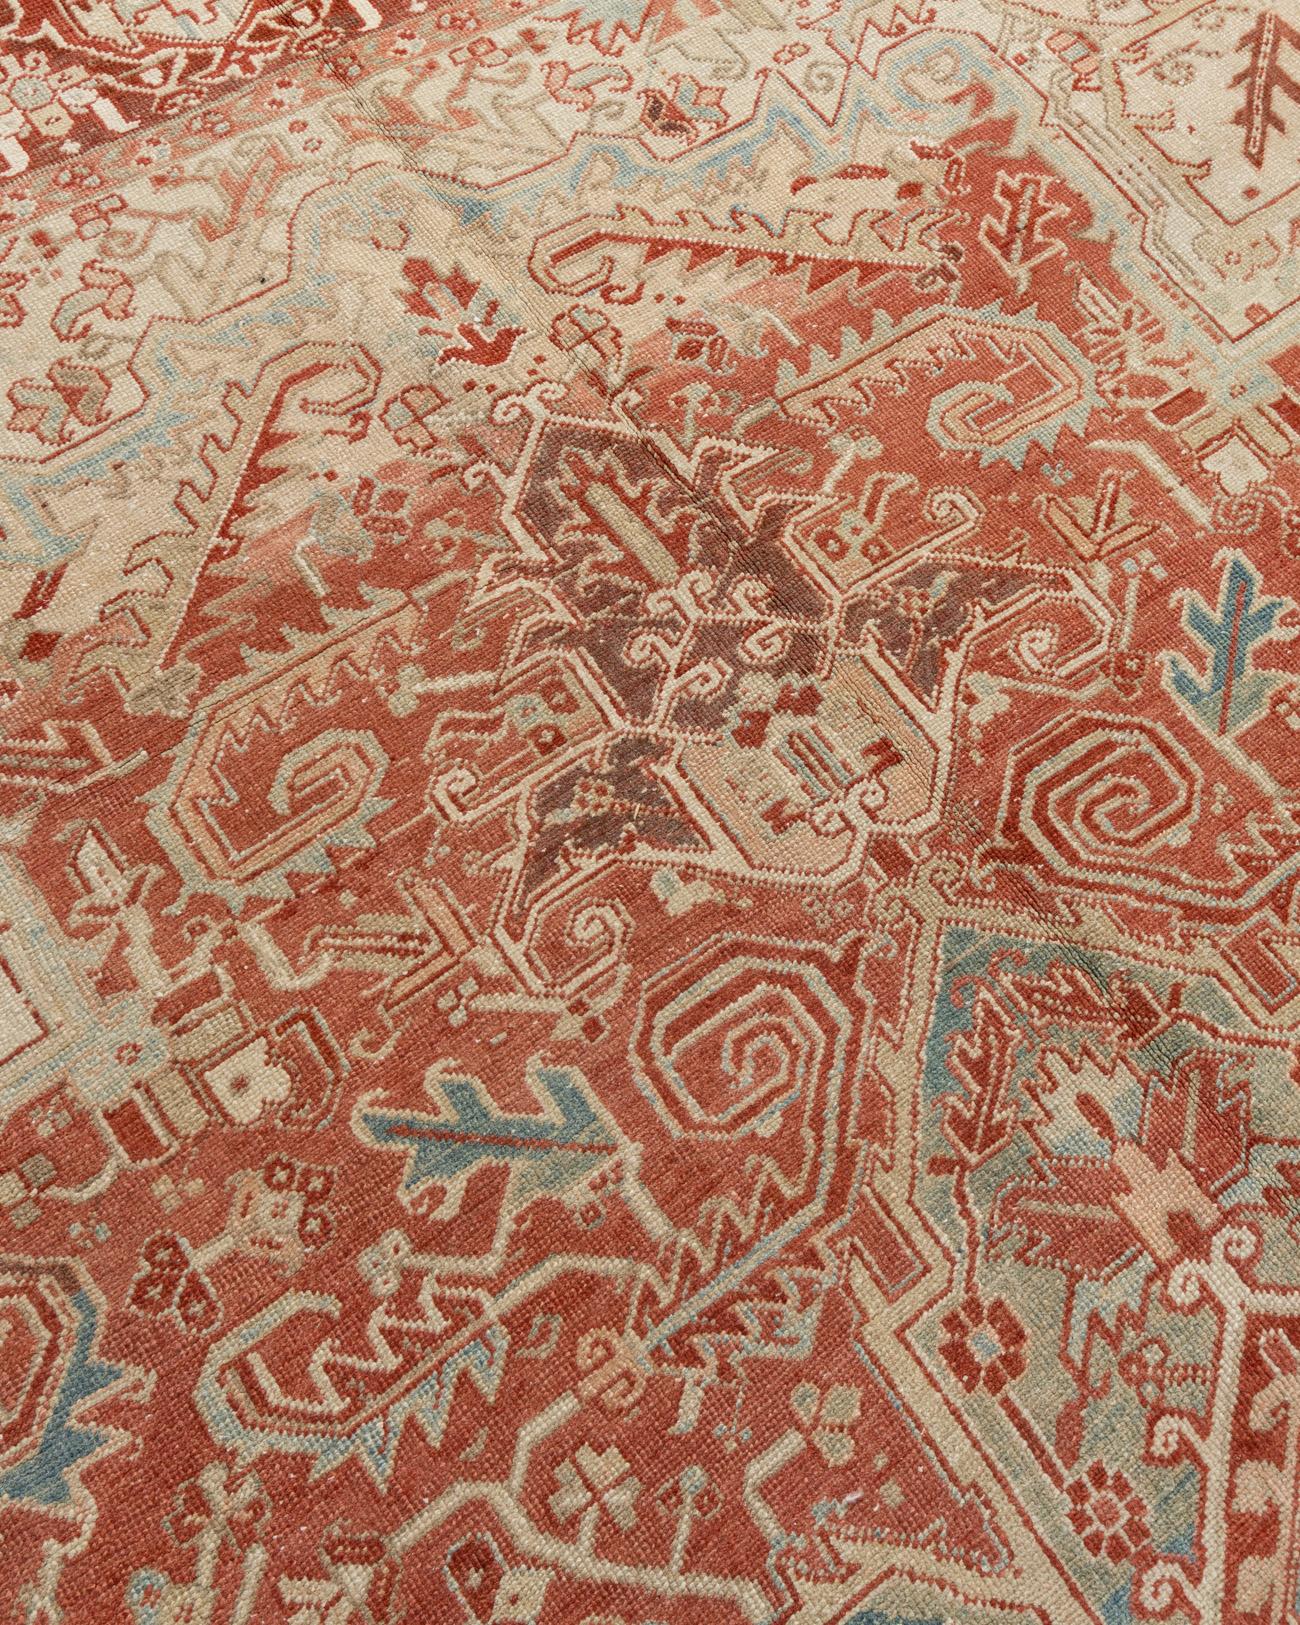 Vintage Persisch Heriz Teppich 9'1 X 12'6. Die traditionellen handgefertigten Heriz-Luxusteppiche sind sowohl modisch als auch sammelwürdig. Sie sind kunstvoll gewebt und zeichnen sich durch leuchtende Farben und geometrische Muster aus. Im